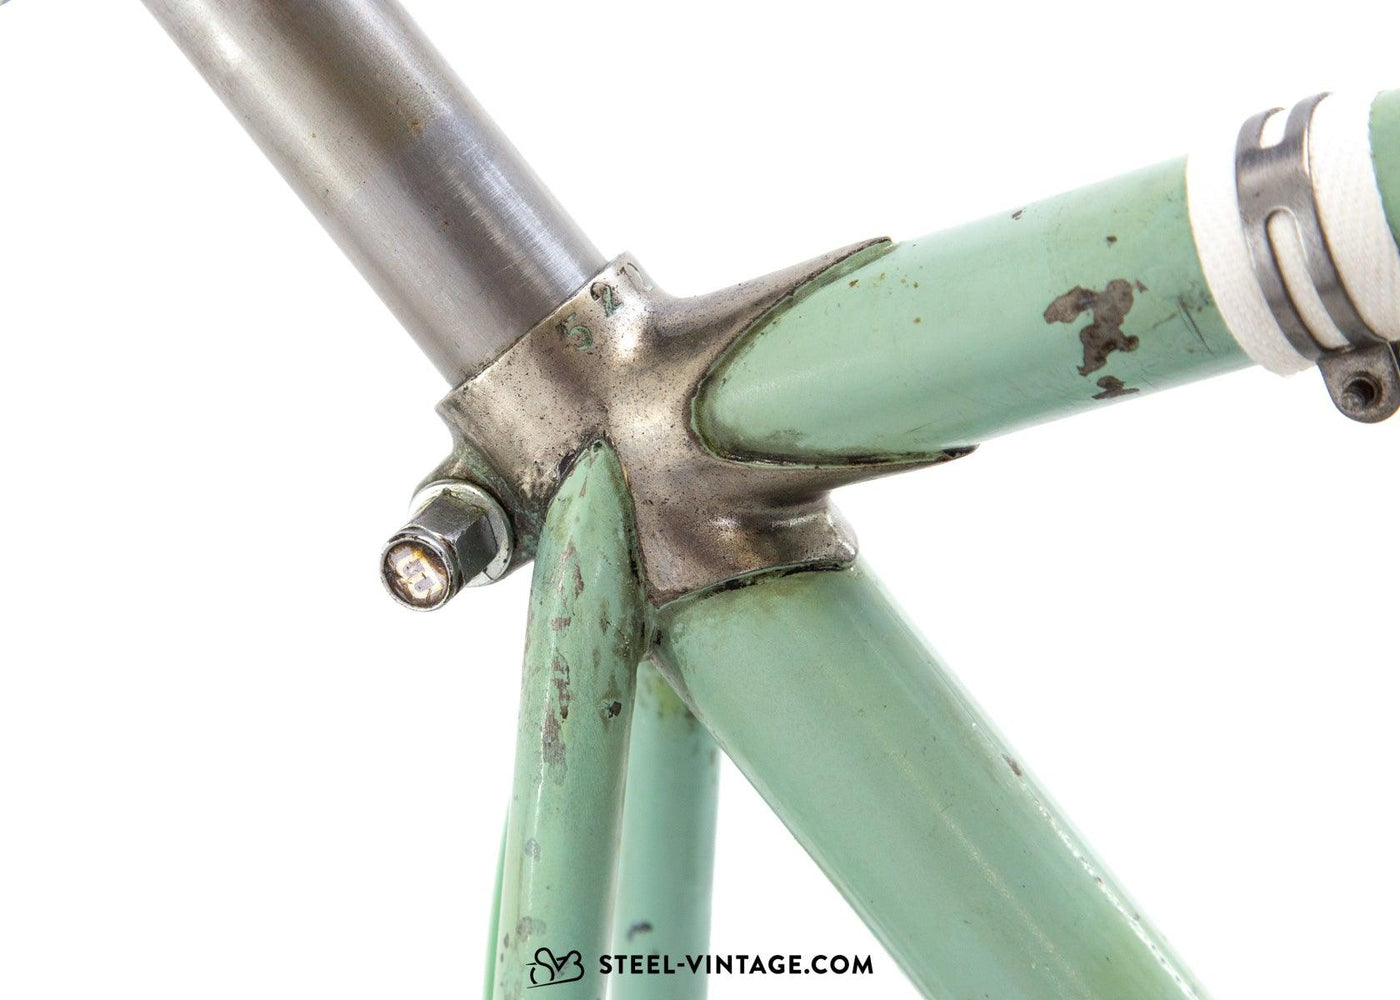 Bianchi Campione del Mondo Original Road Bicycle 1953 - Steel Vintage Bikes